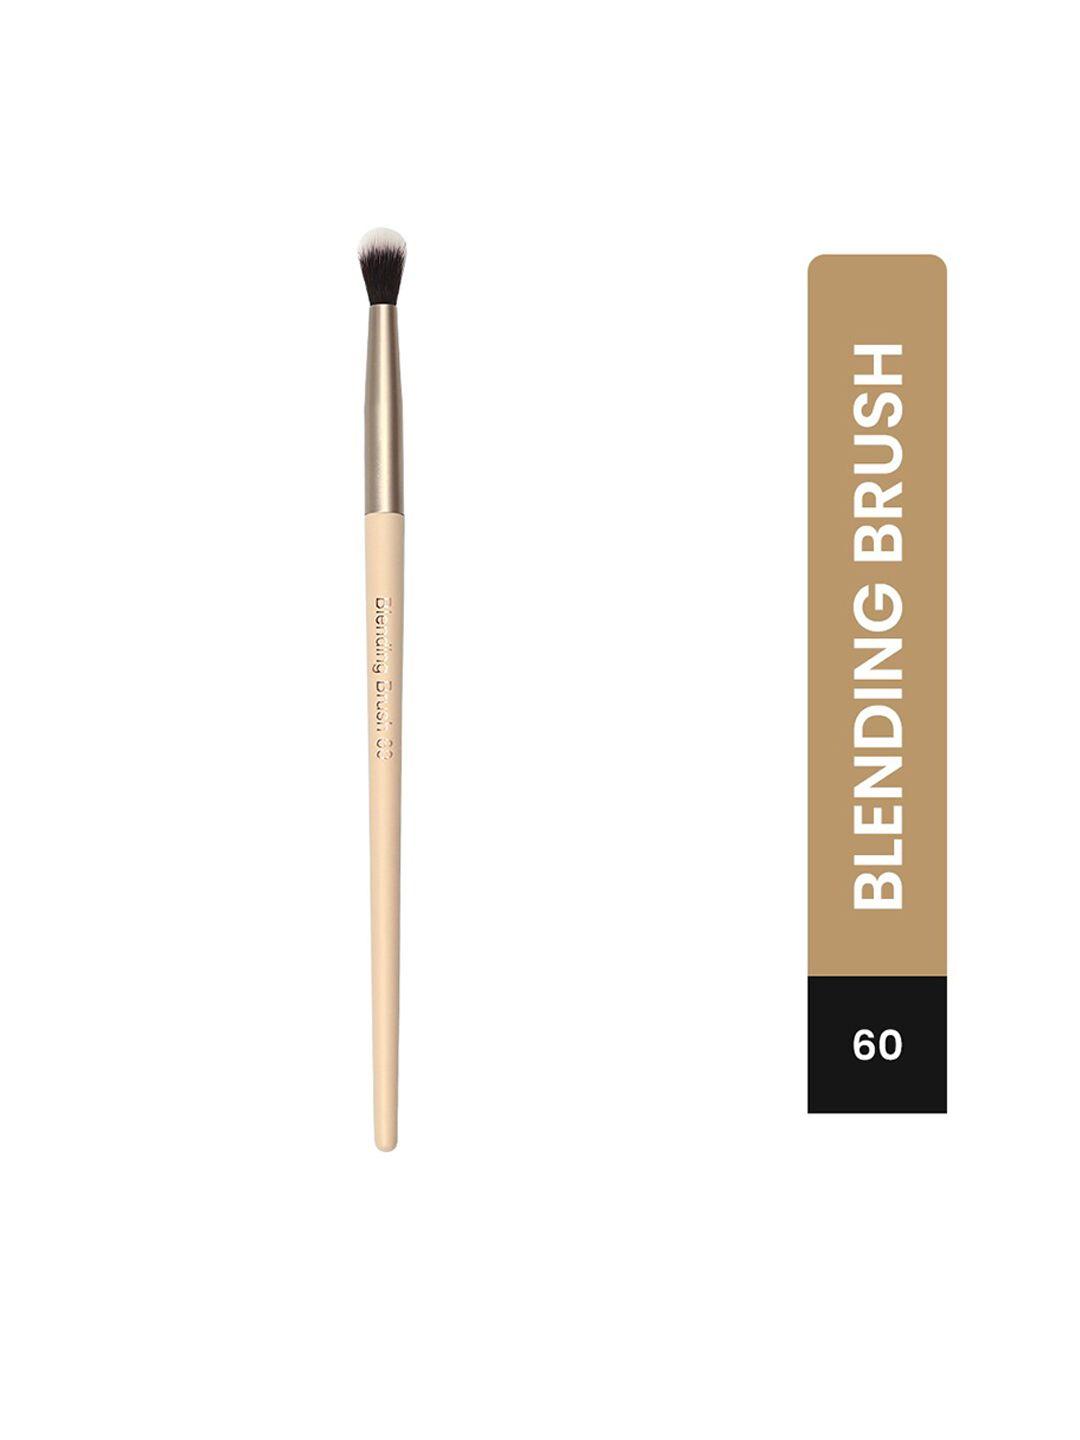 milagro beauty blending brush 60 - beige